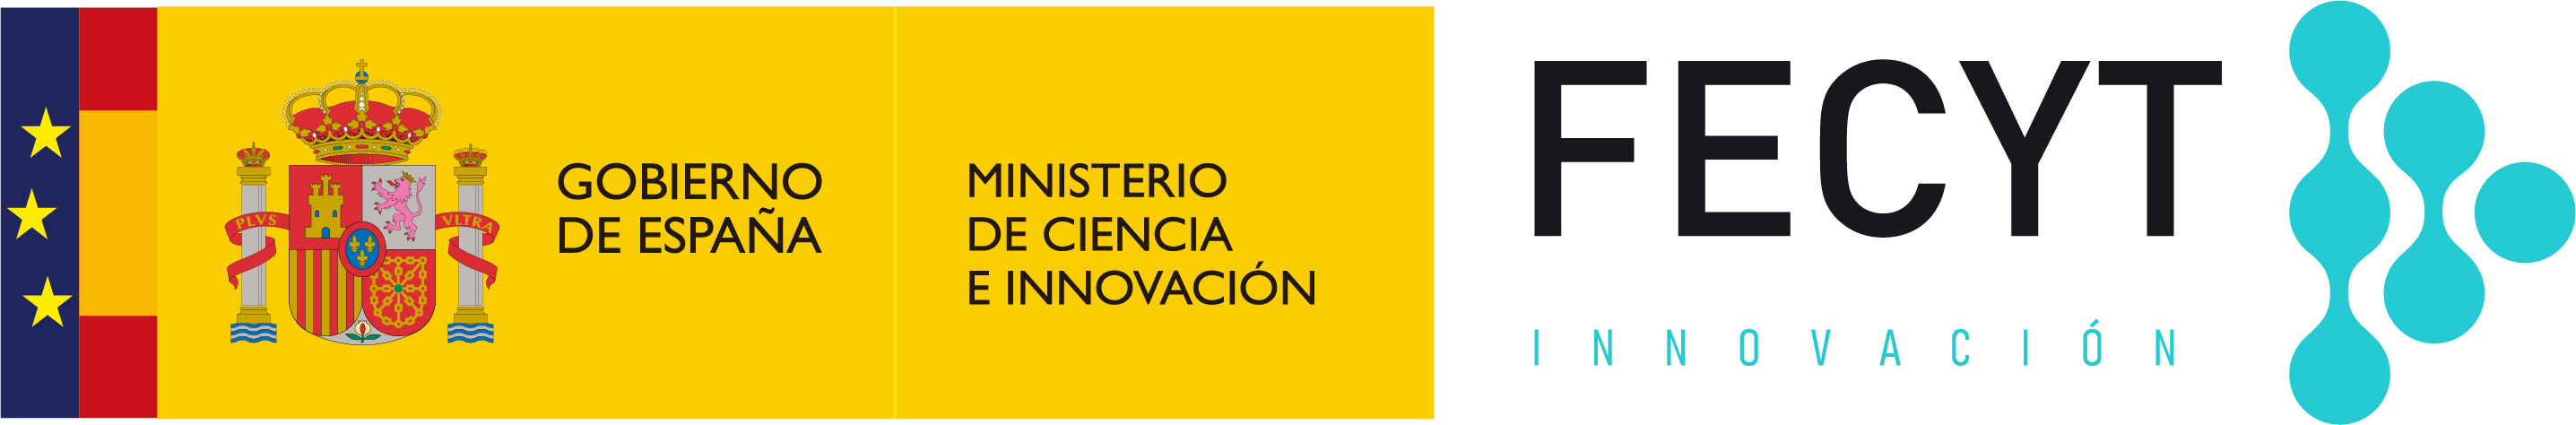 logotipo Ministerio de CIencia e Innovación - FECYT